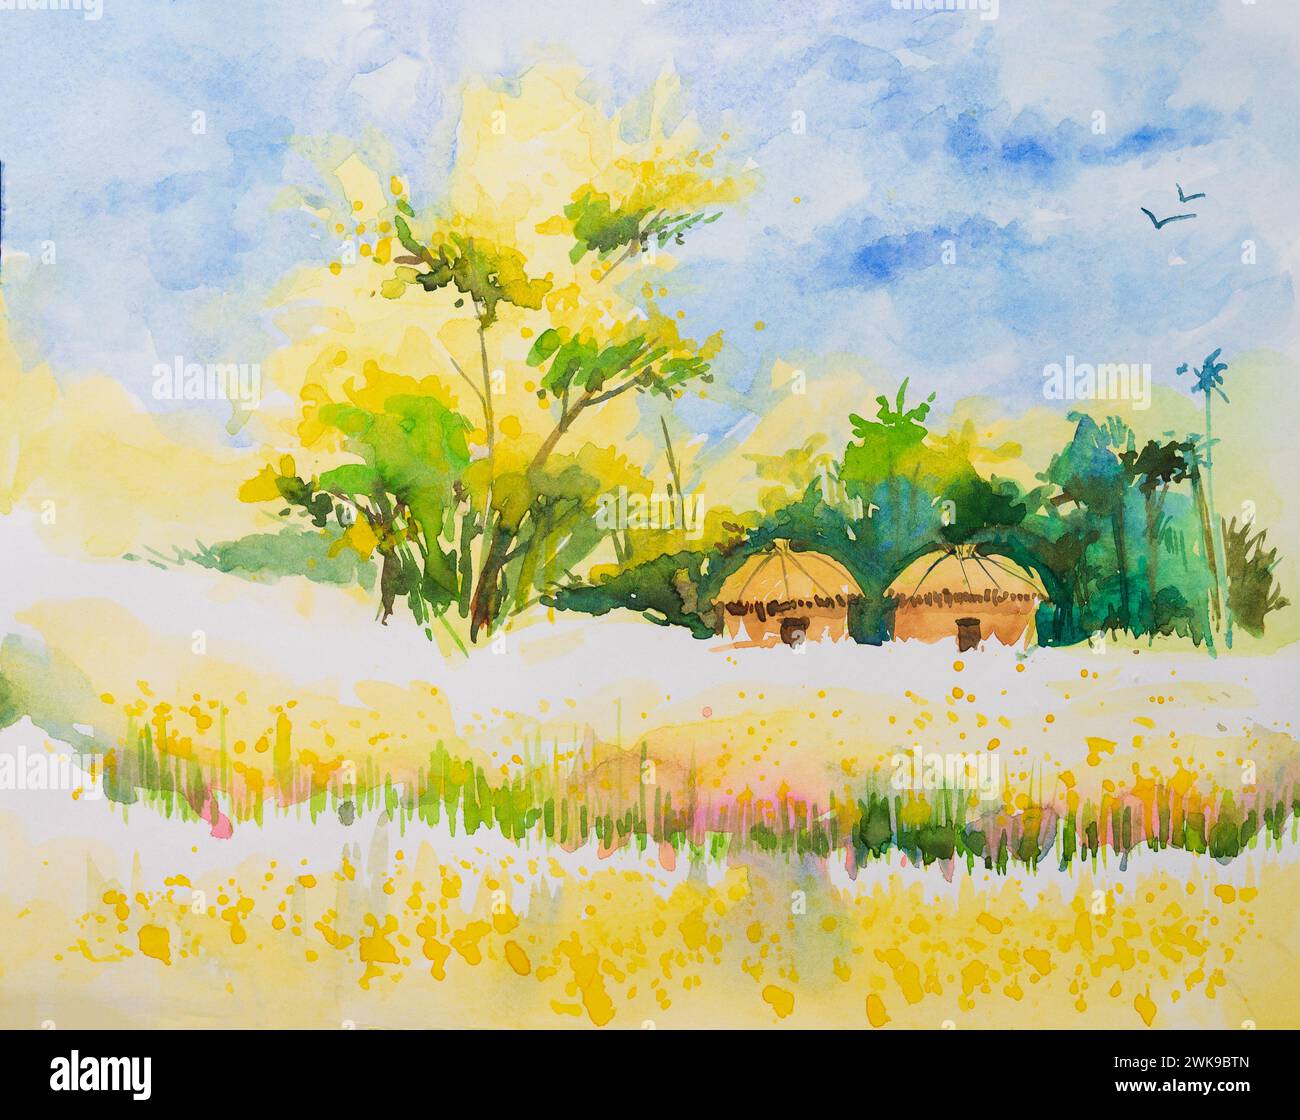 Aquarellmalerei eines indischen Dorfes, zwei Häuser mit Waldhintergrund und gelbem Reisfeld im Vordergrund. Indische Aquarellmalerei, handgezeichnet. Stockfoto